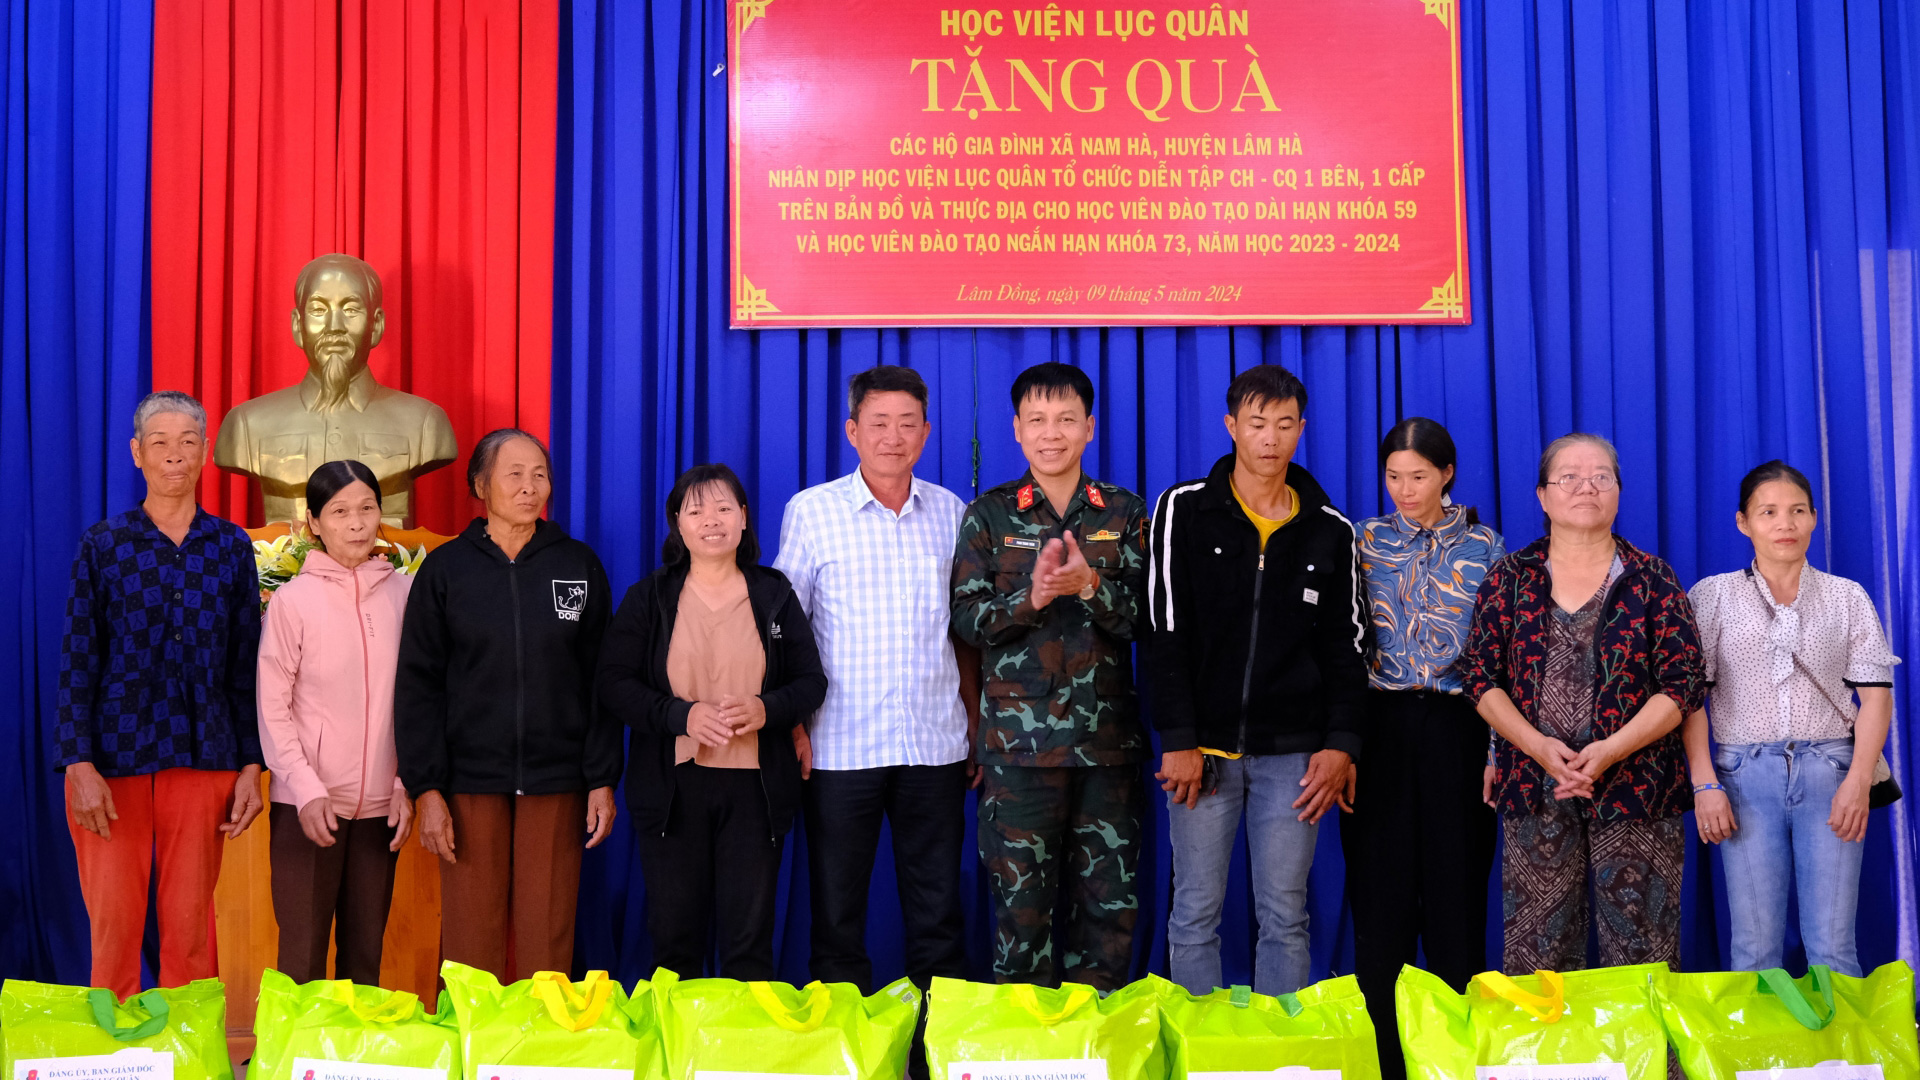 Học viện Lục quân tặng quà cho các gia đình khó khăn tại Lâm Hà